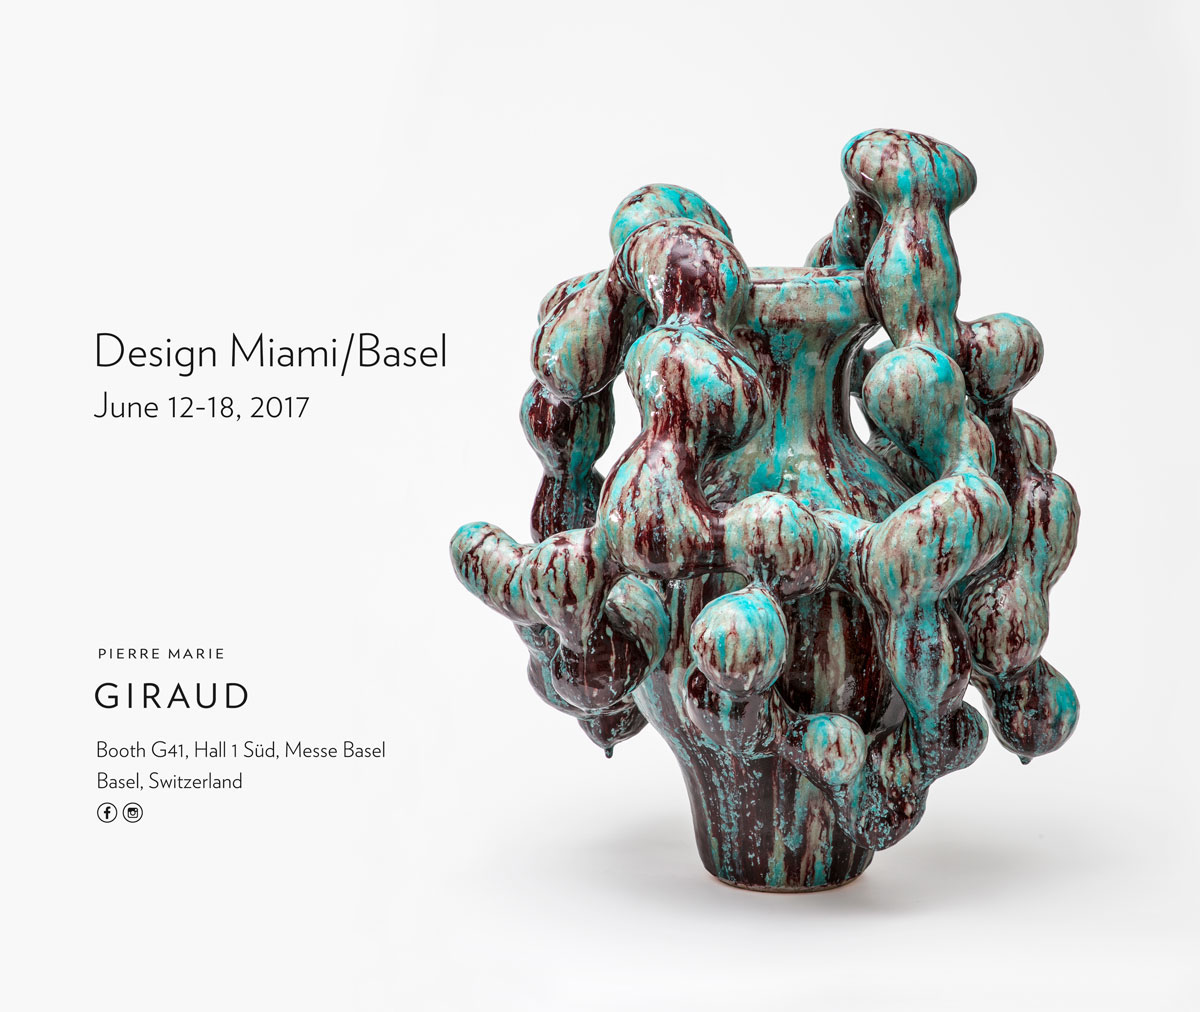 Design Miami /Basel 2017